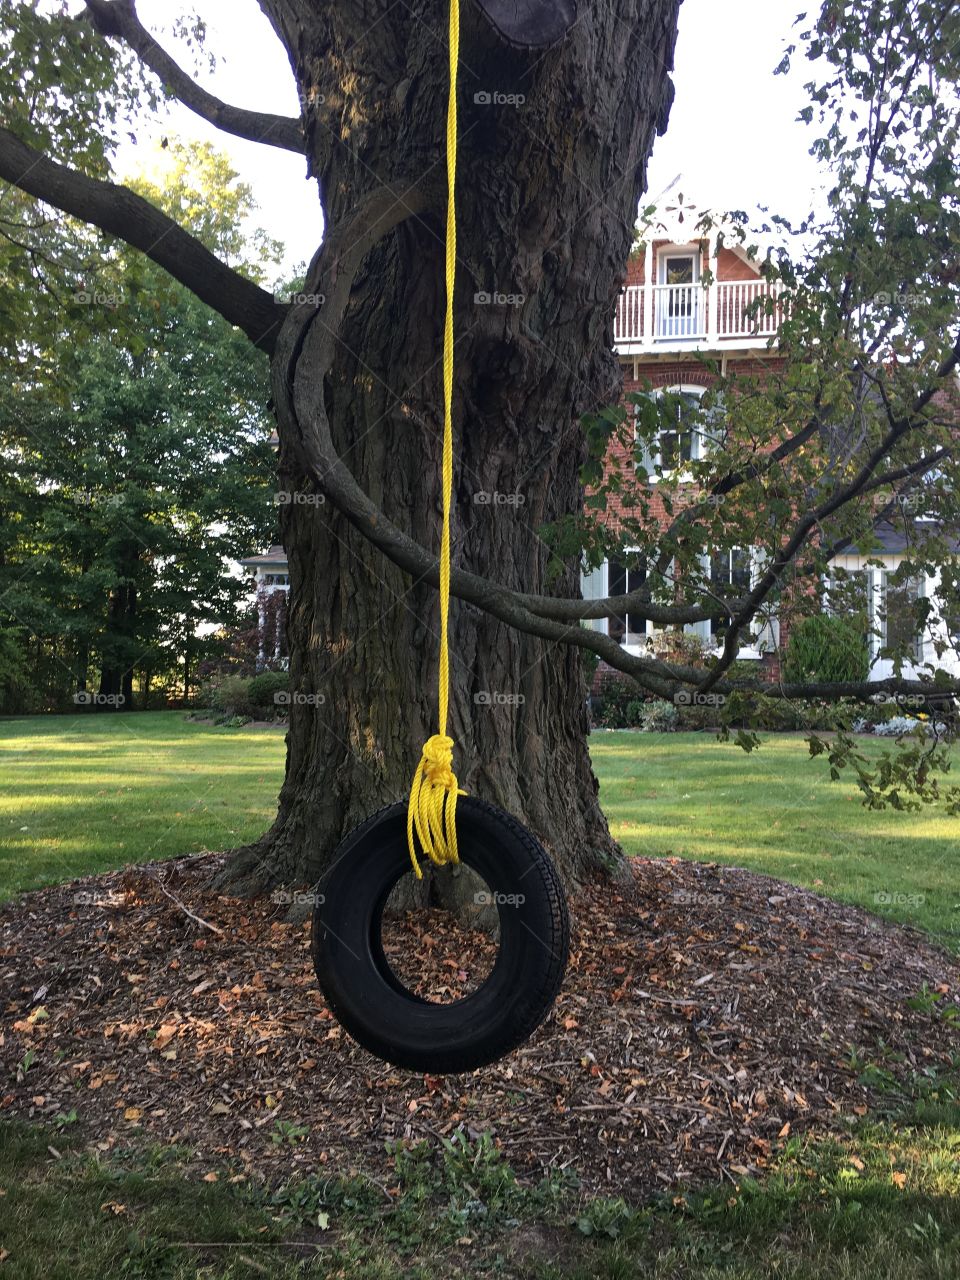 Tire swing in tree